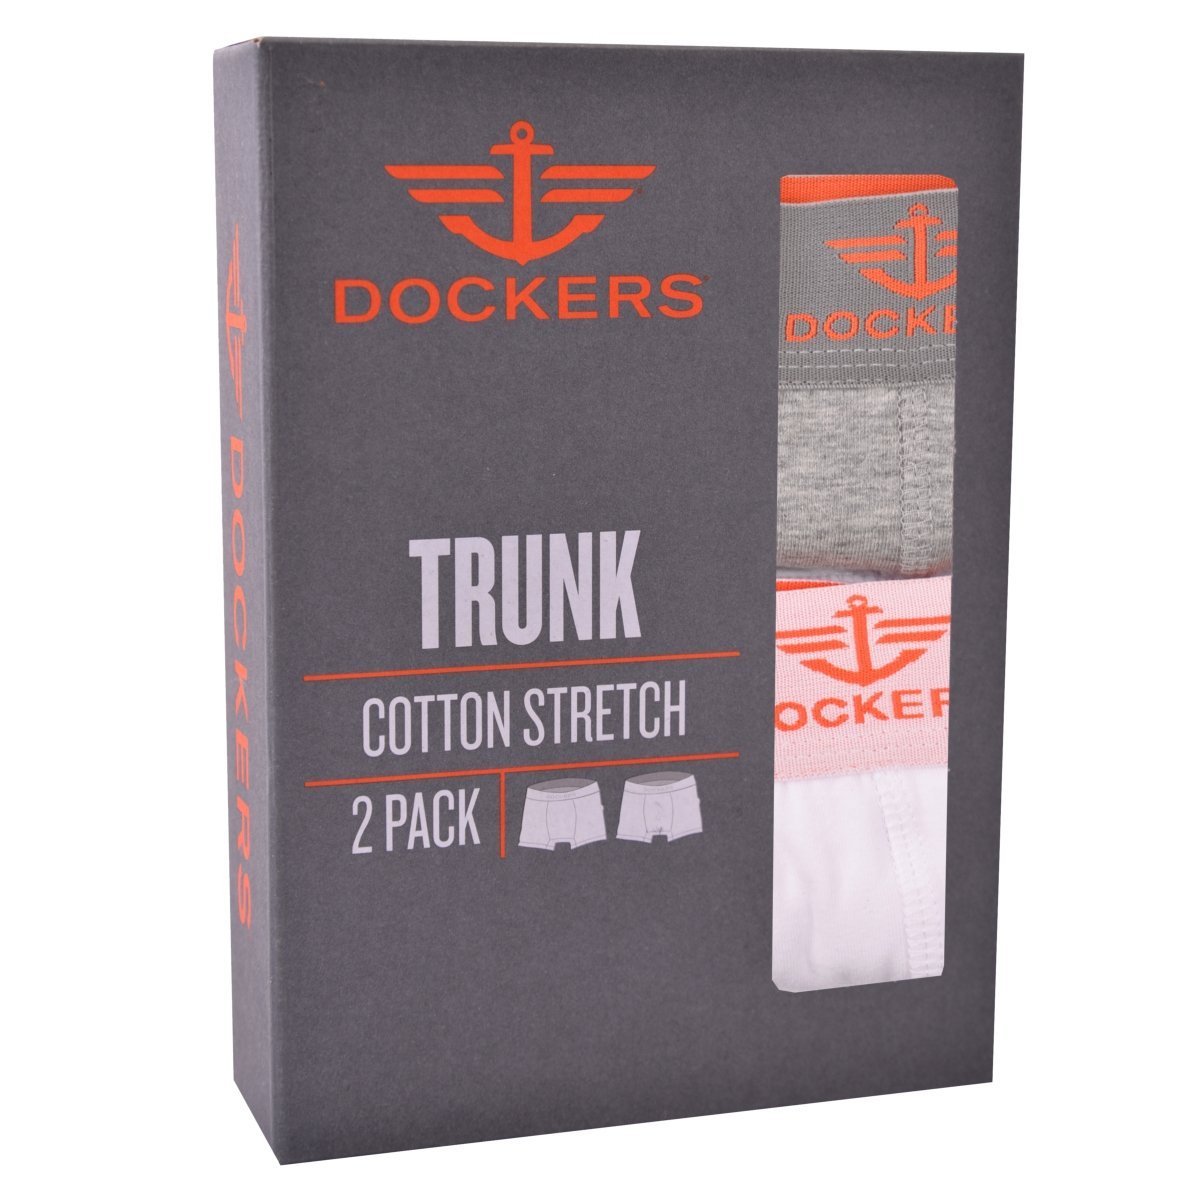 Bóxer Trunk Strech 2 Pack Dockers